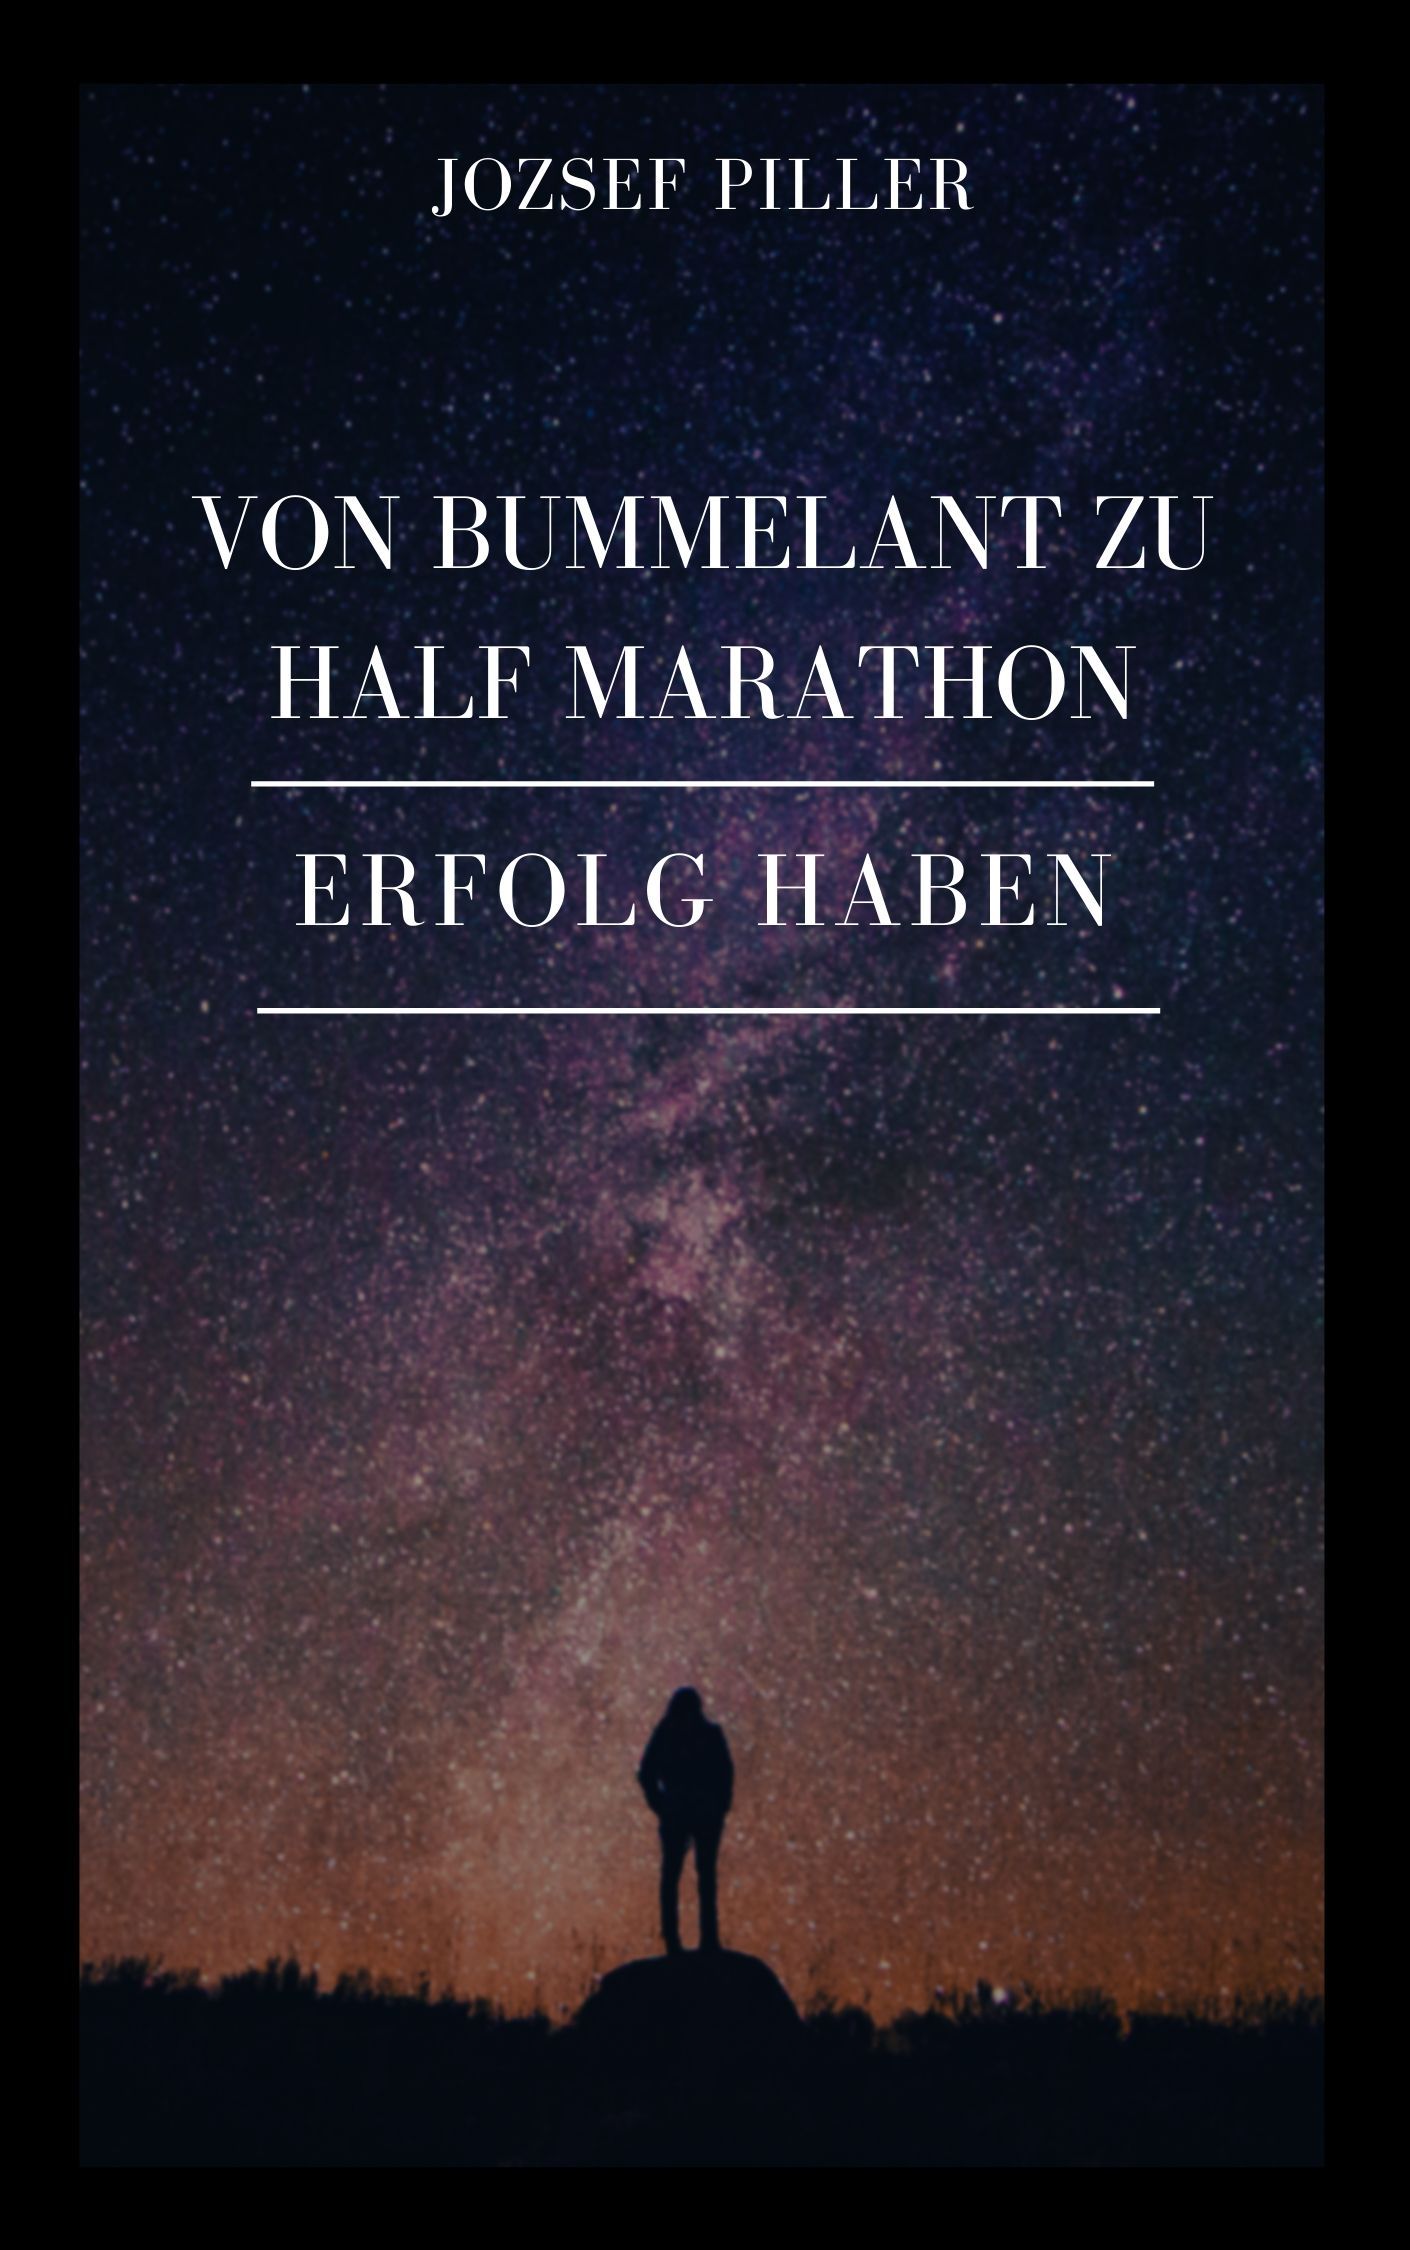 Von Bummelant zu Half Marathon - Wie gelingt es Ihnen?, e-bok av Jozsef Piller